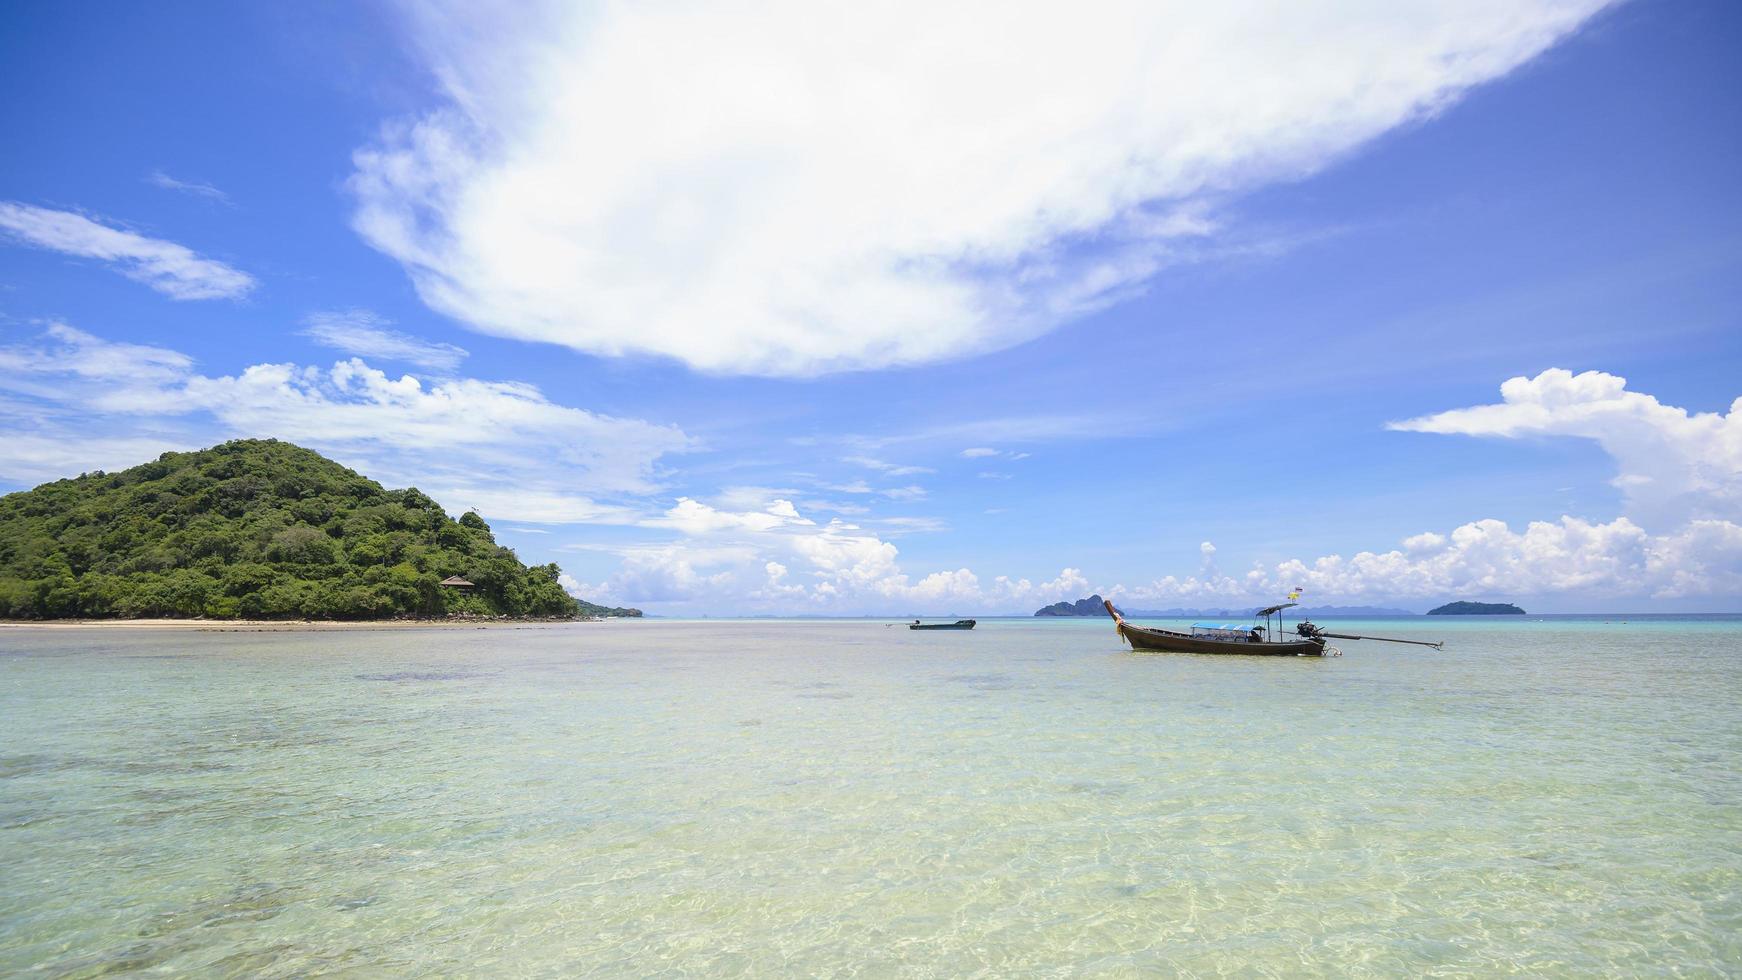 hermosa vista del paisaje de la playa tropical, mar esmeralda y arena blanca contra el cielo azul, bahía maya en la isla phi phi, tailandia foto